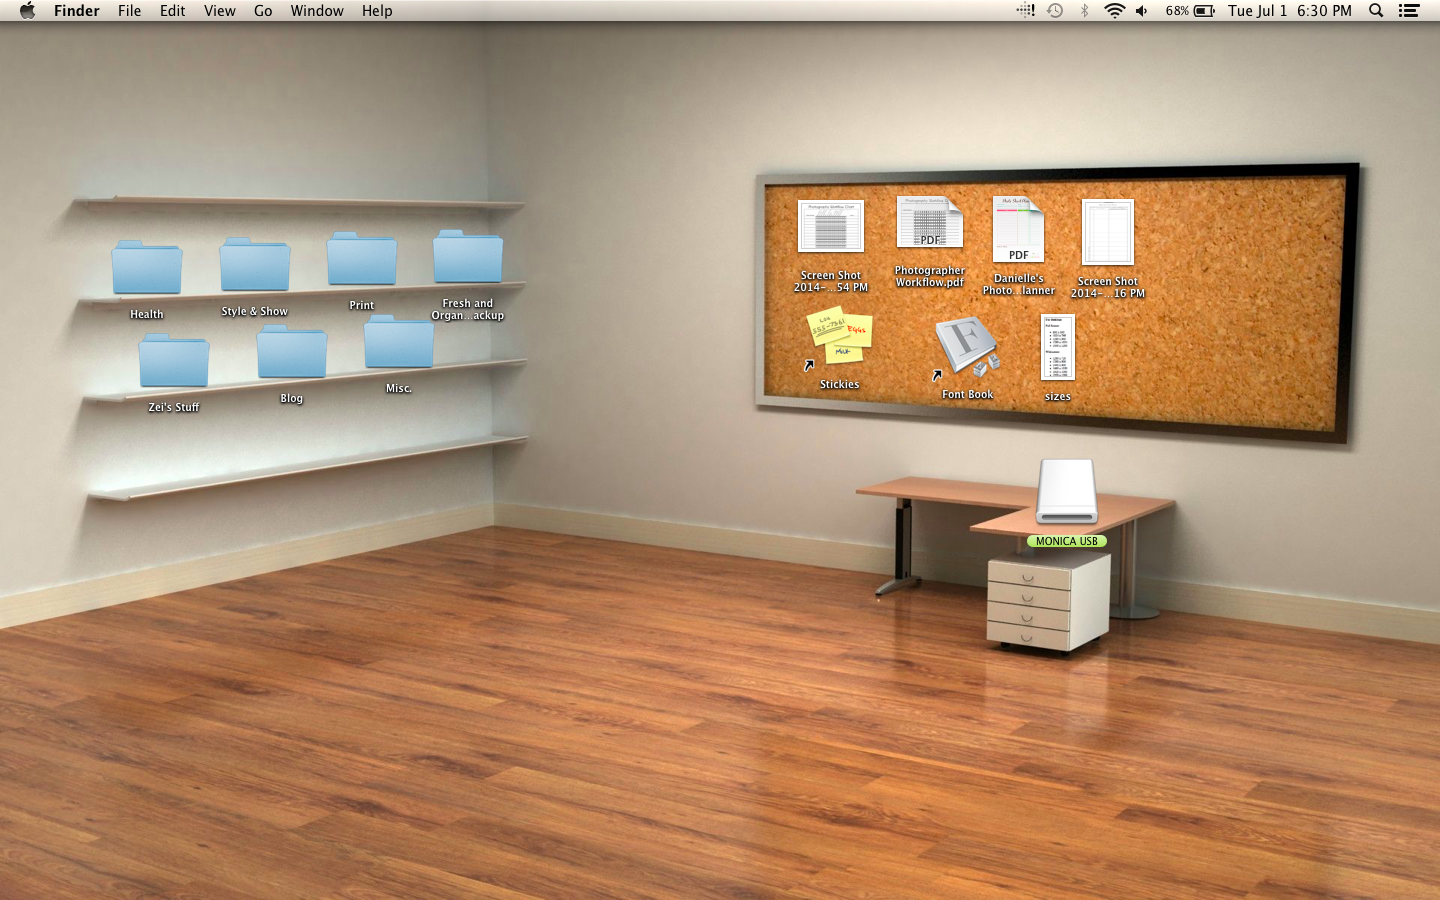  49 Desk and Shelves Desktop Wallpaper WallpaperSafari